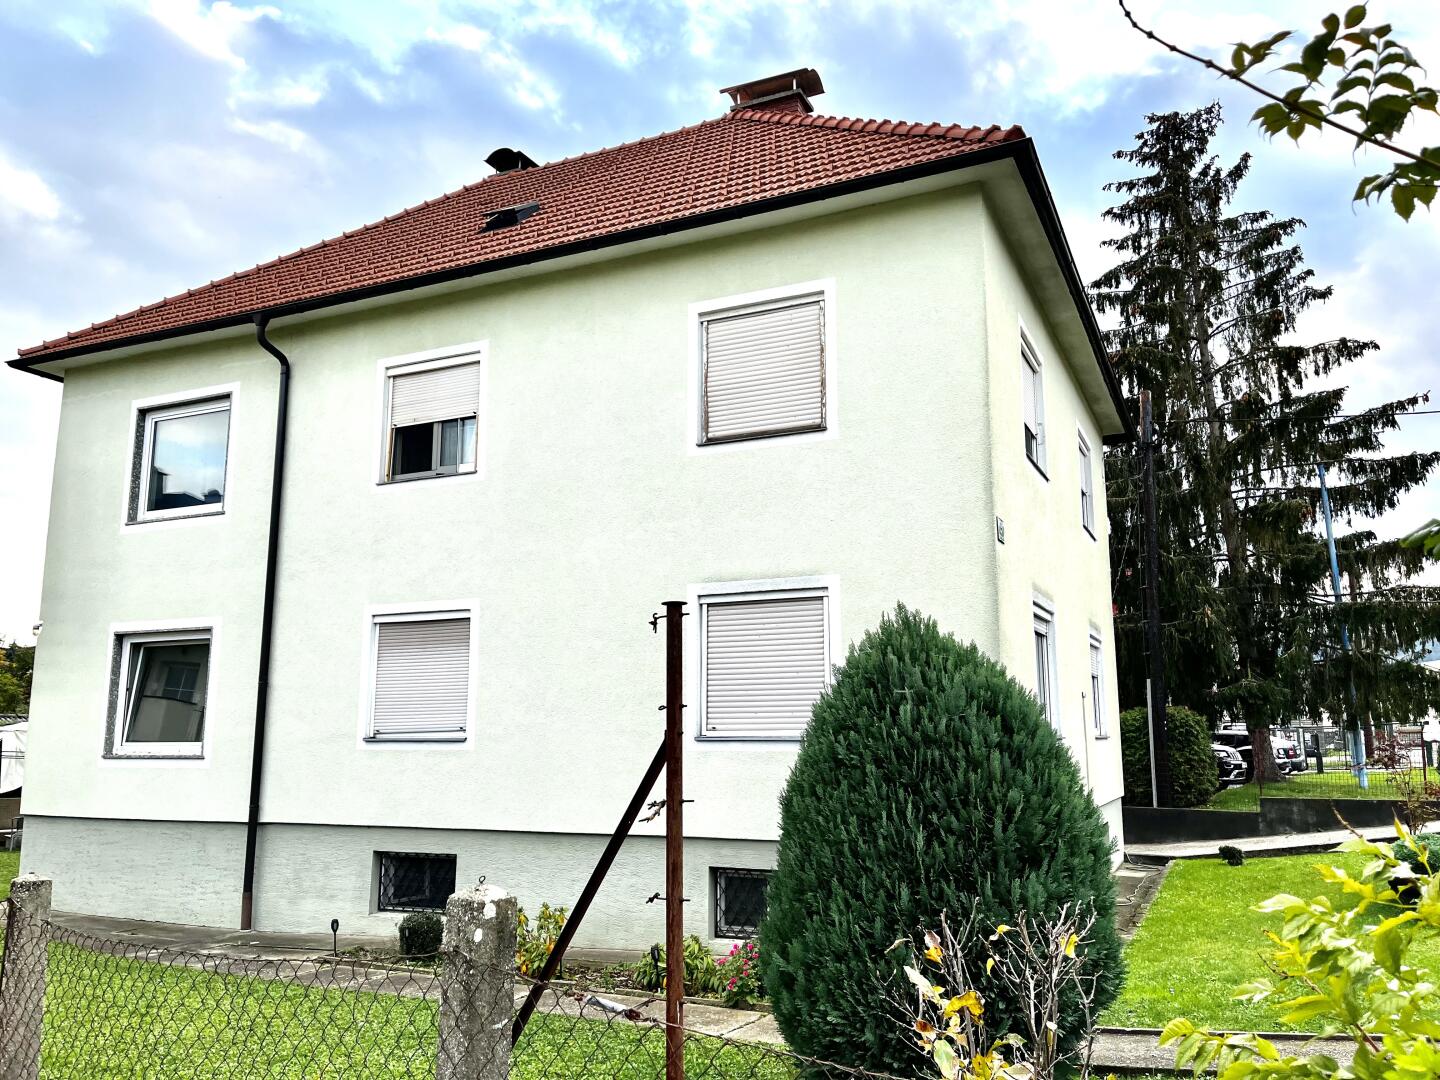 2 Familienhaus - Ausbaureserve im Dach, weiteres Potential für Erweiterung- Dichte 0,6